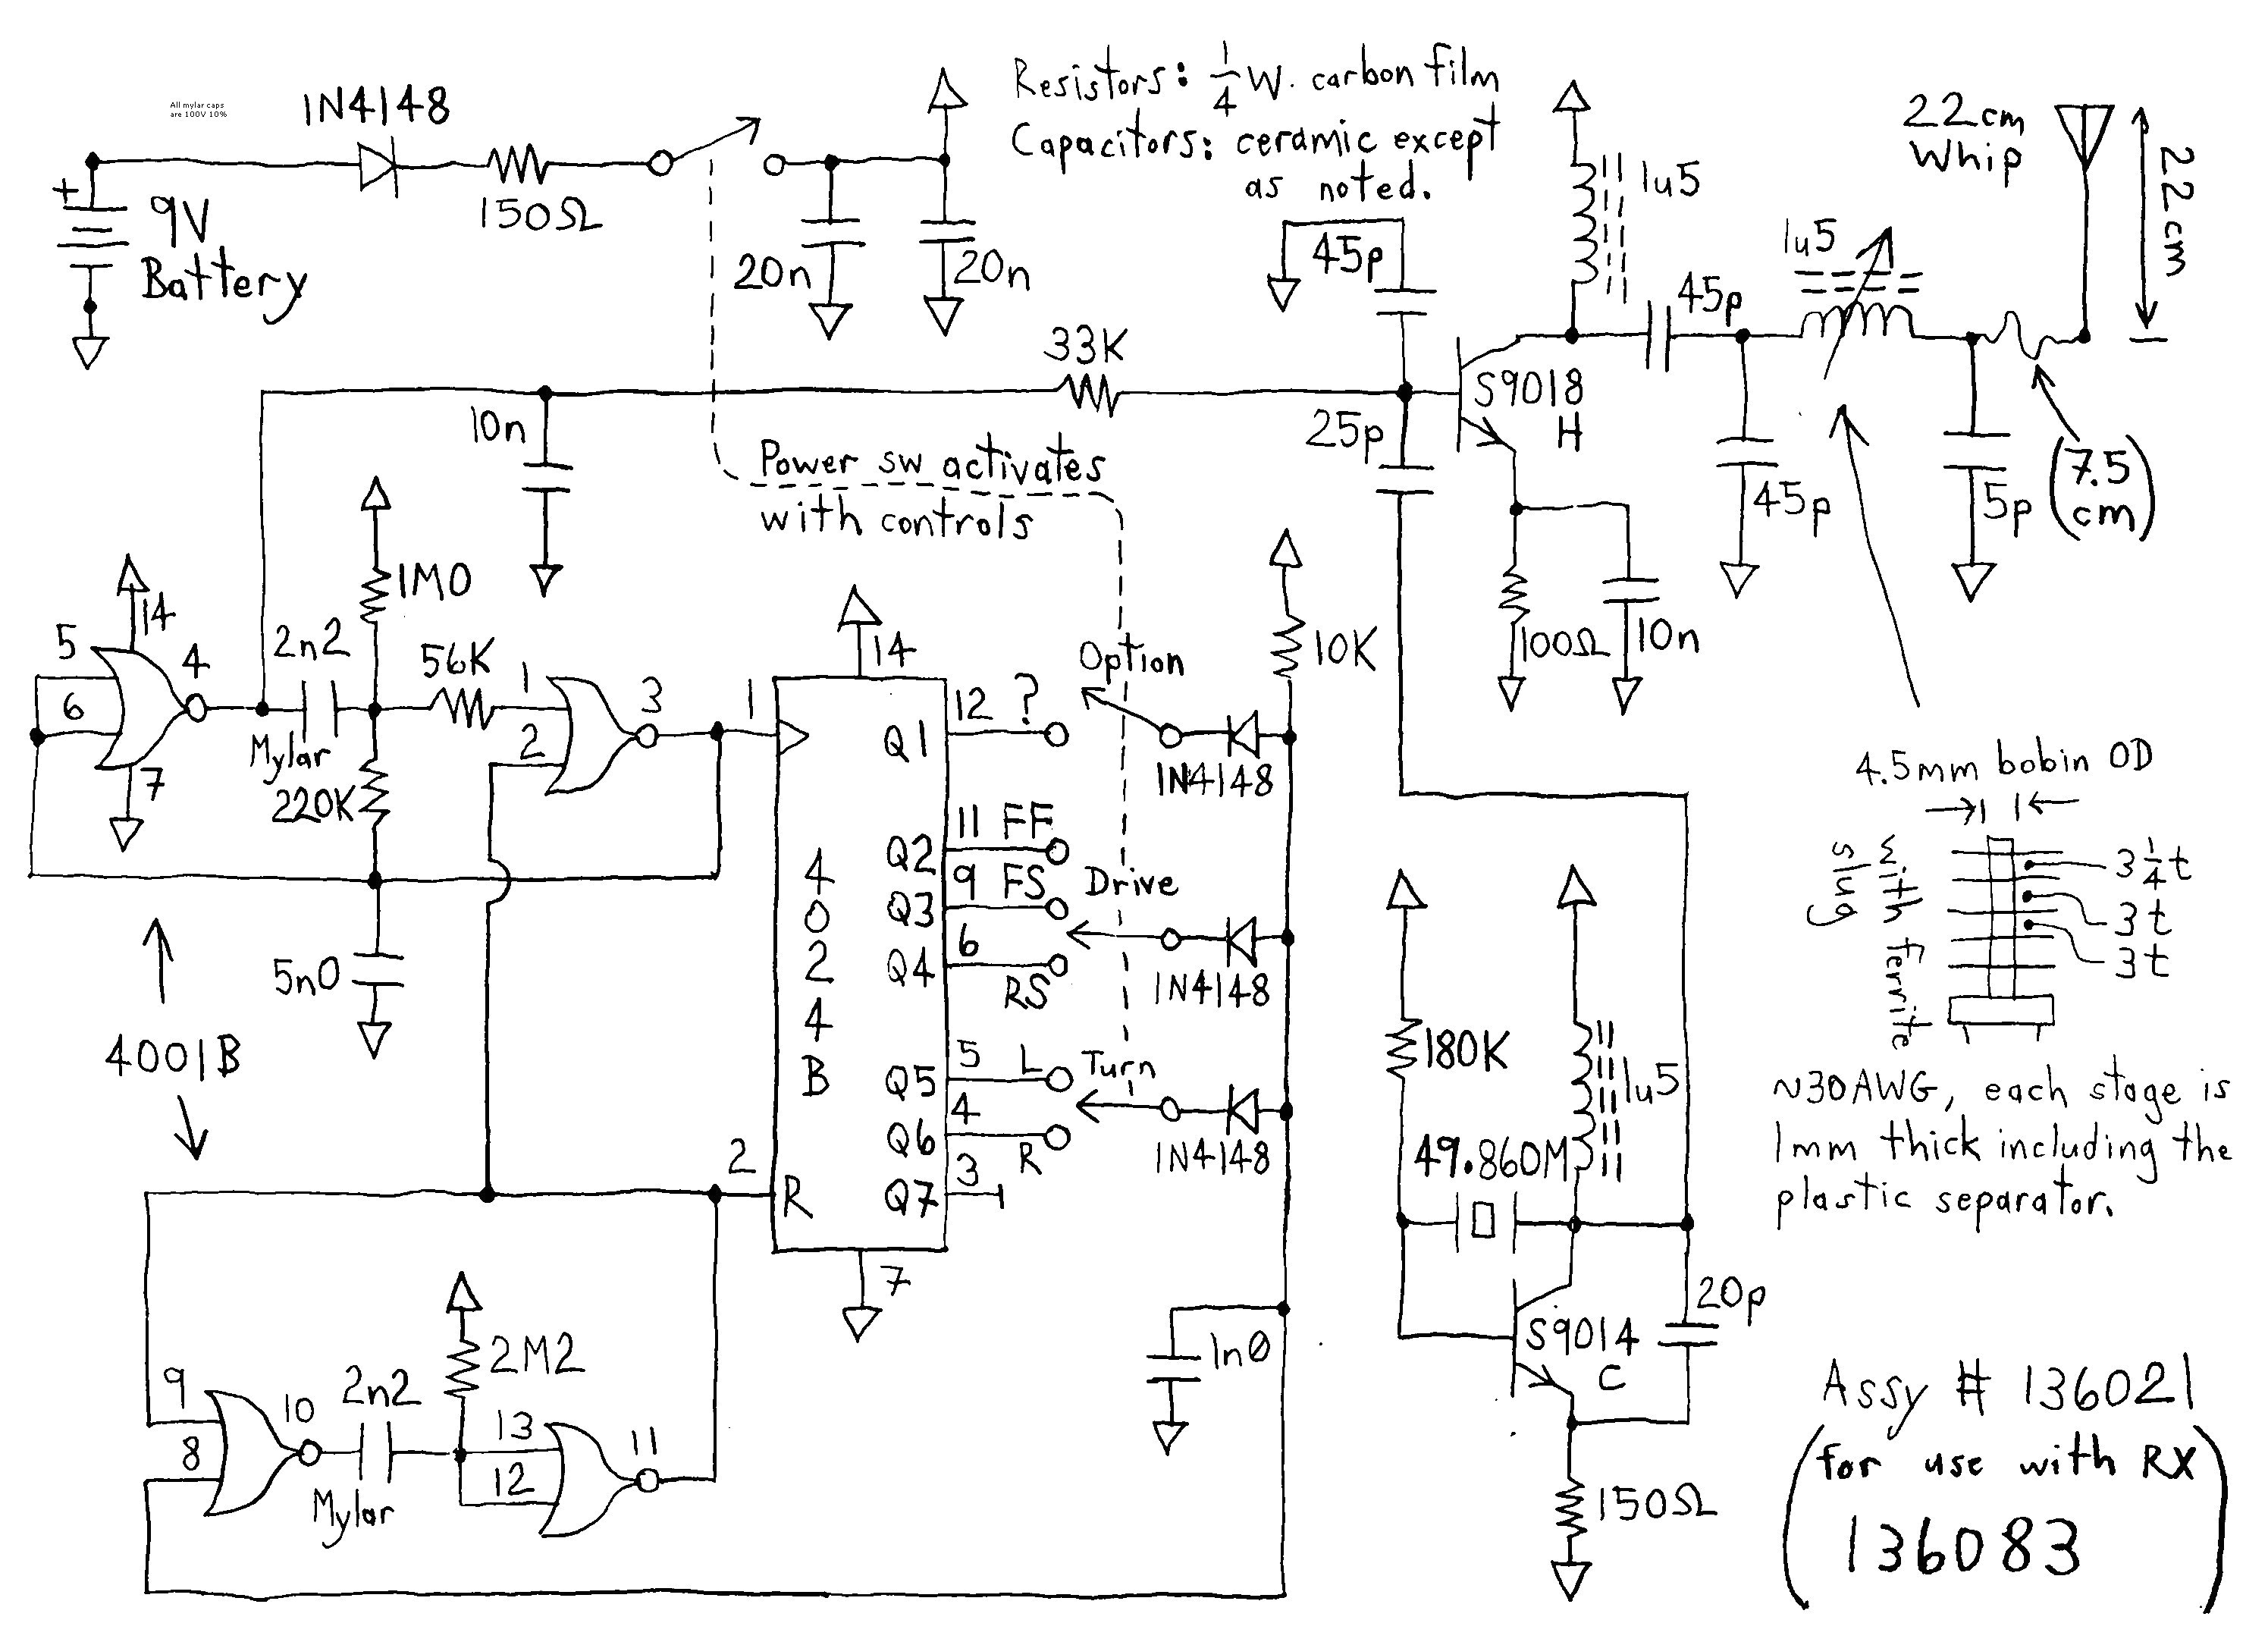 vonage home wiring diagram wiring diagram go vonage home wiring diagram wiring diagram new vonage home